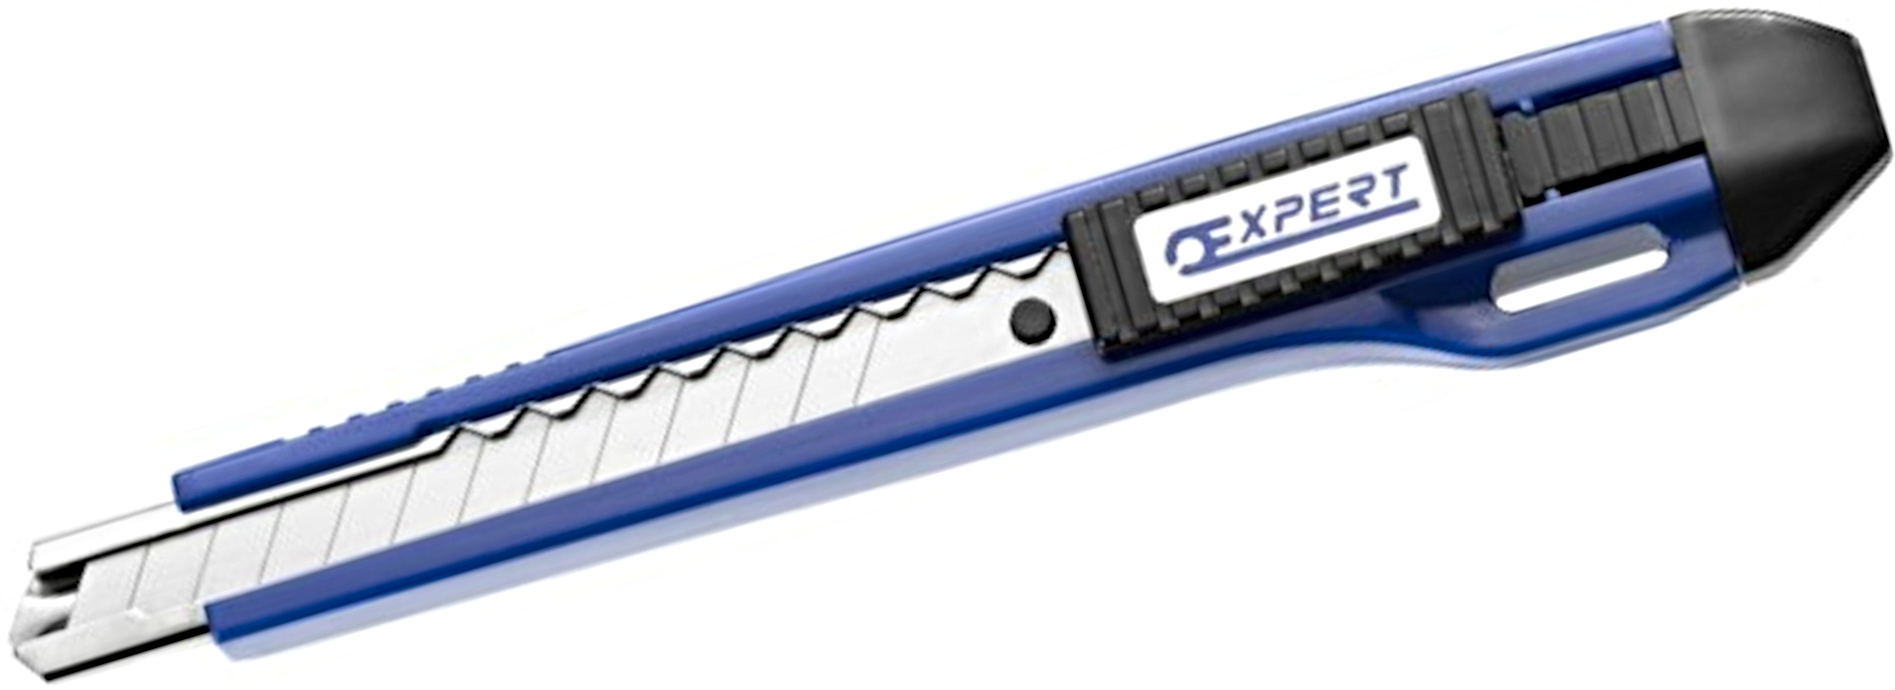 TONA EXPERT E020301 nůž s odlamovací čepelí 9 mm